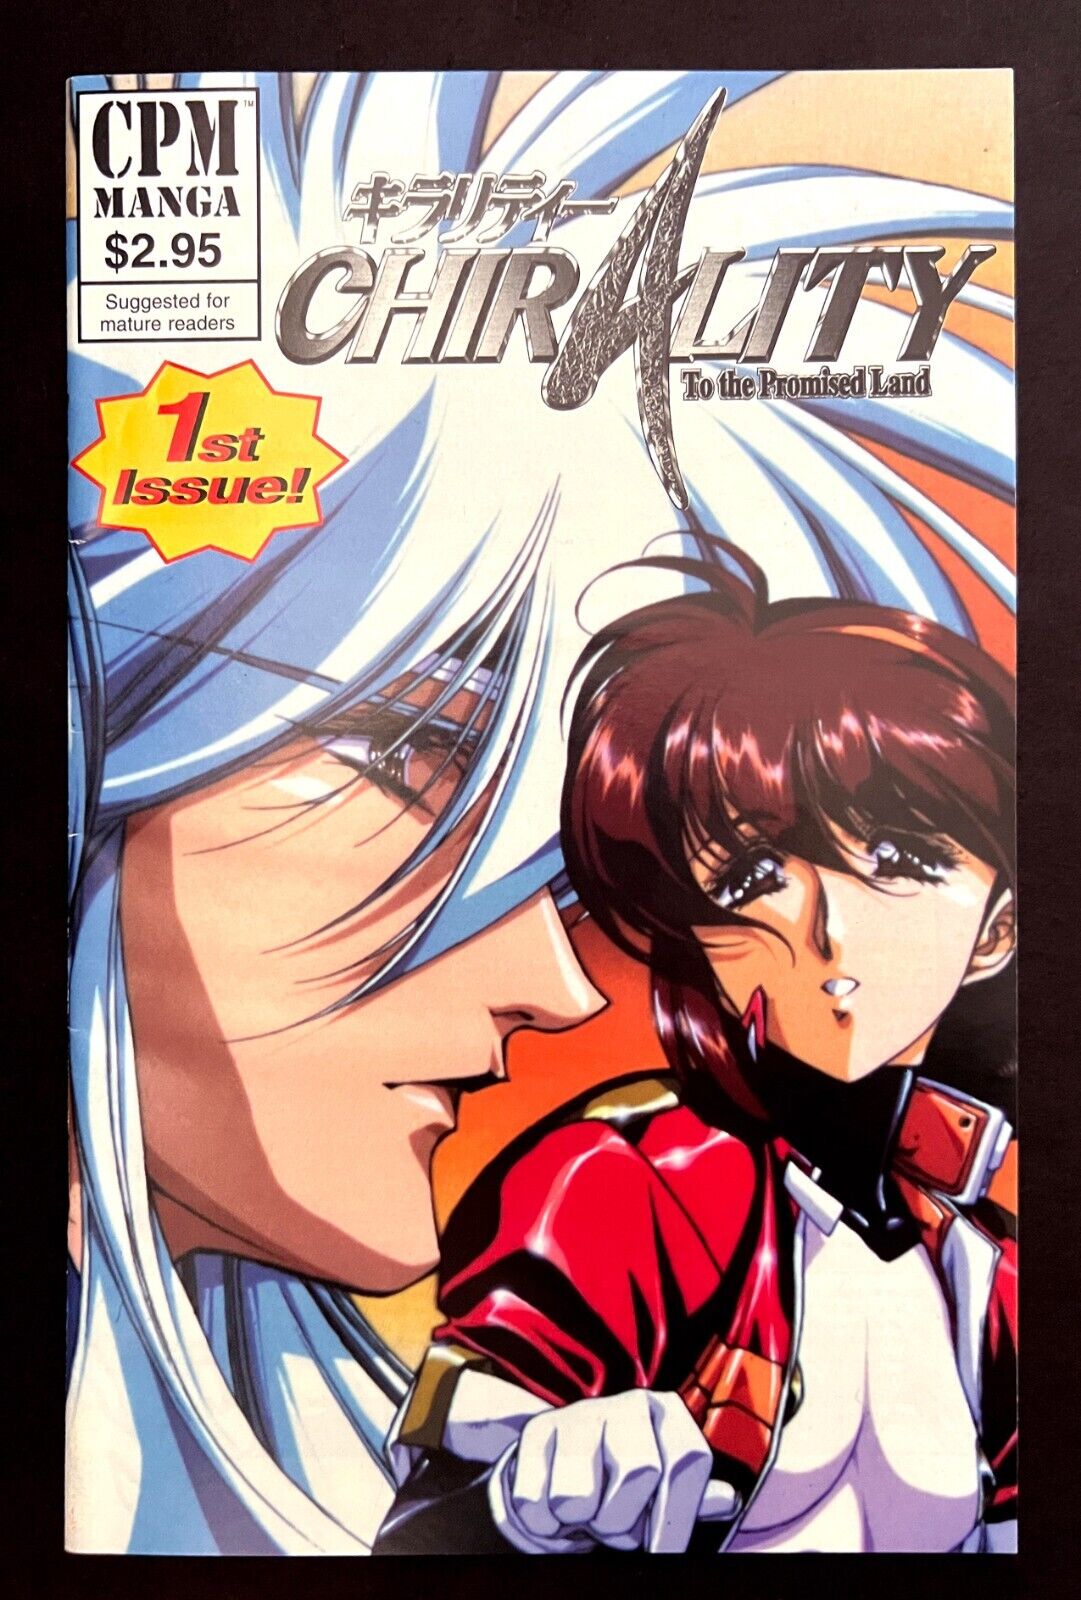 CHIRALITY TO THE PROMISED LAND #1 By Satoshi Urushihara CPM Manga 1997